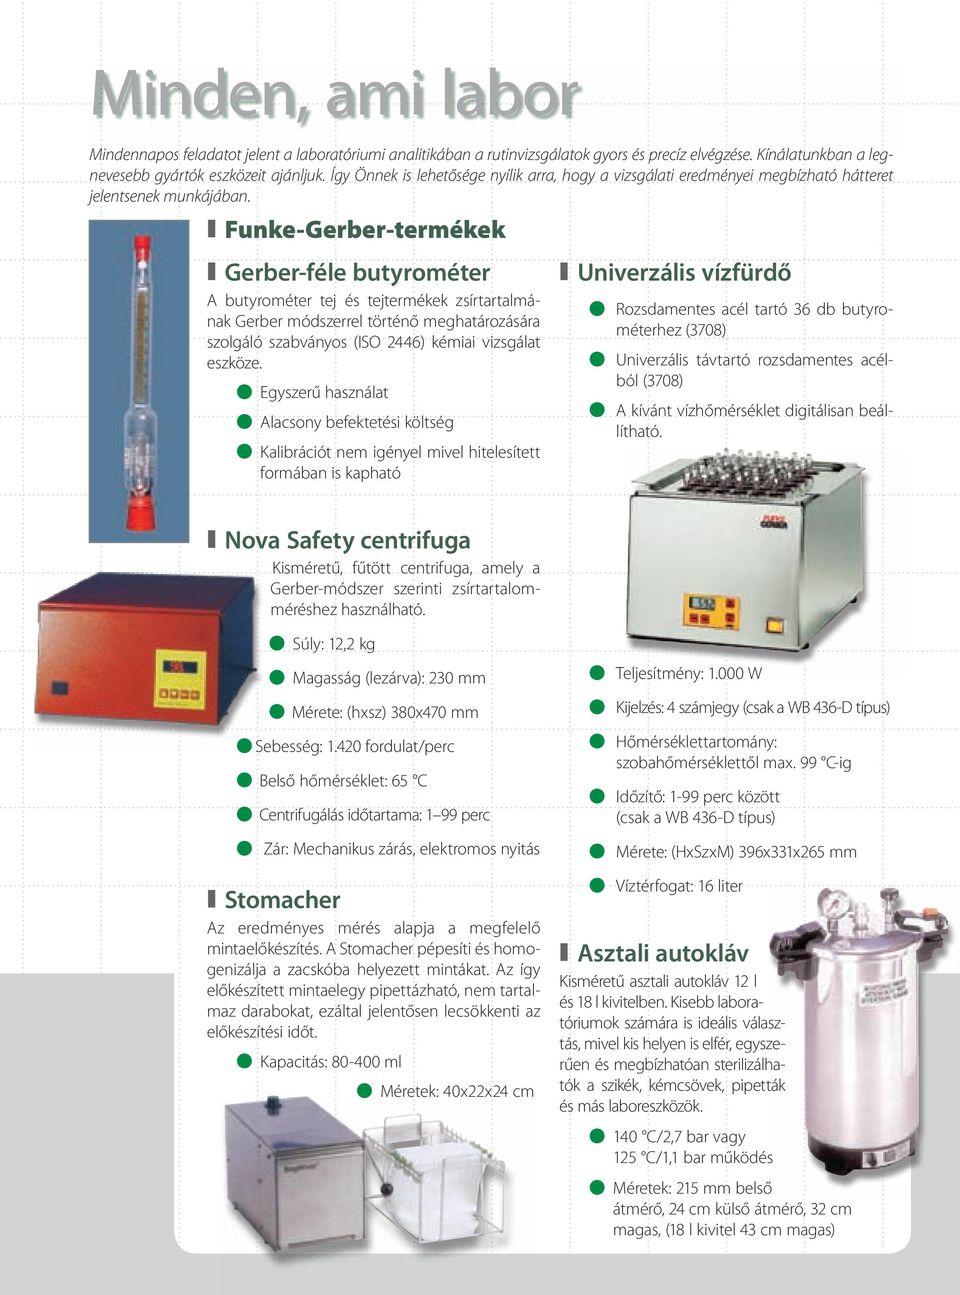 Funke-Gerber-termékek Gerber-féle butyrométer A butyrométer tej és tejtermékek zsírtartalmának Gerber módszerrel történő meghatározására szolgáló szabványos (ISO 2446) kémiai vizsgálat eszköze.